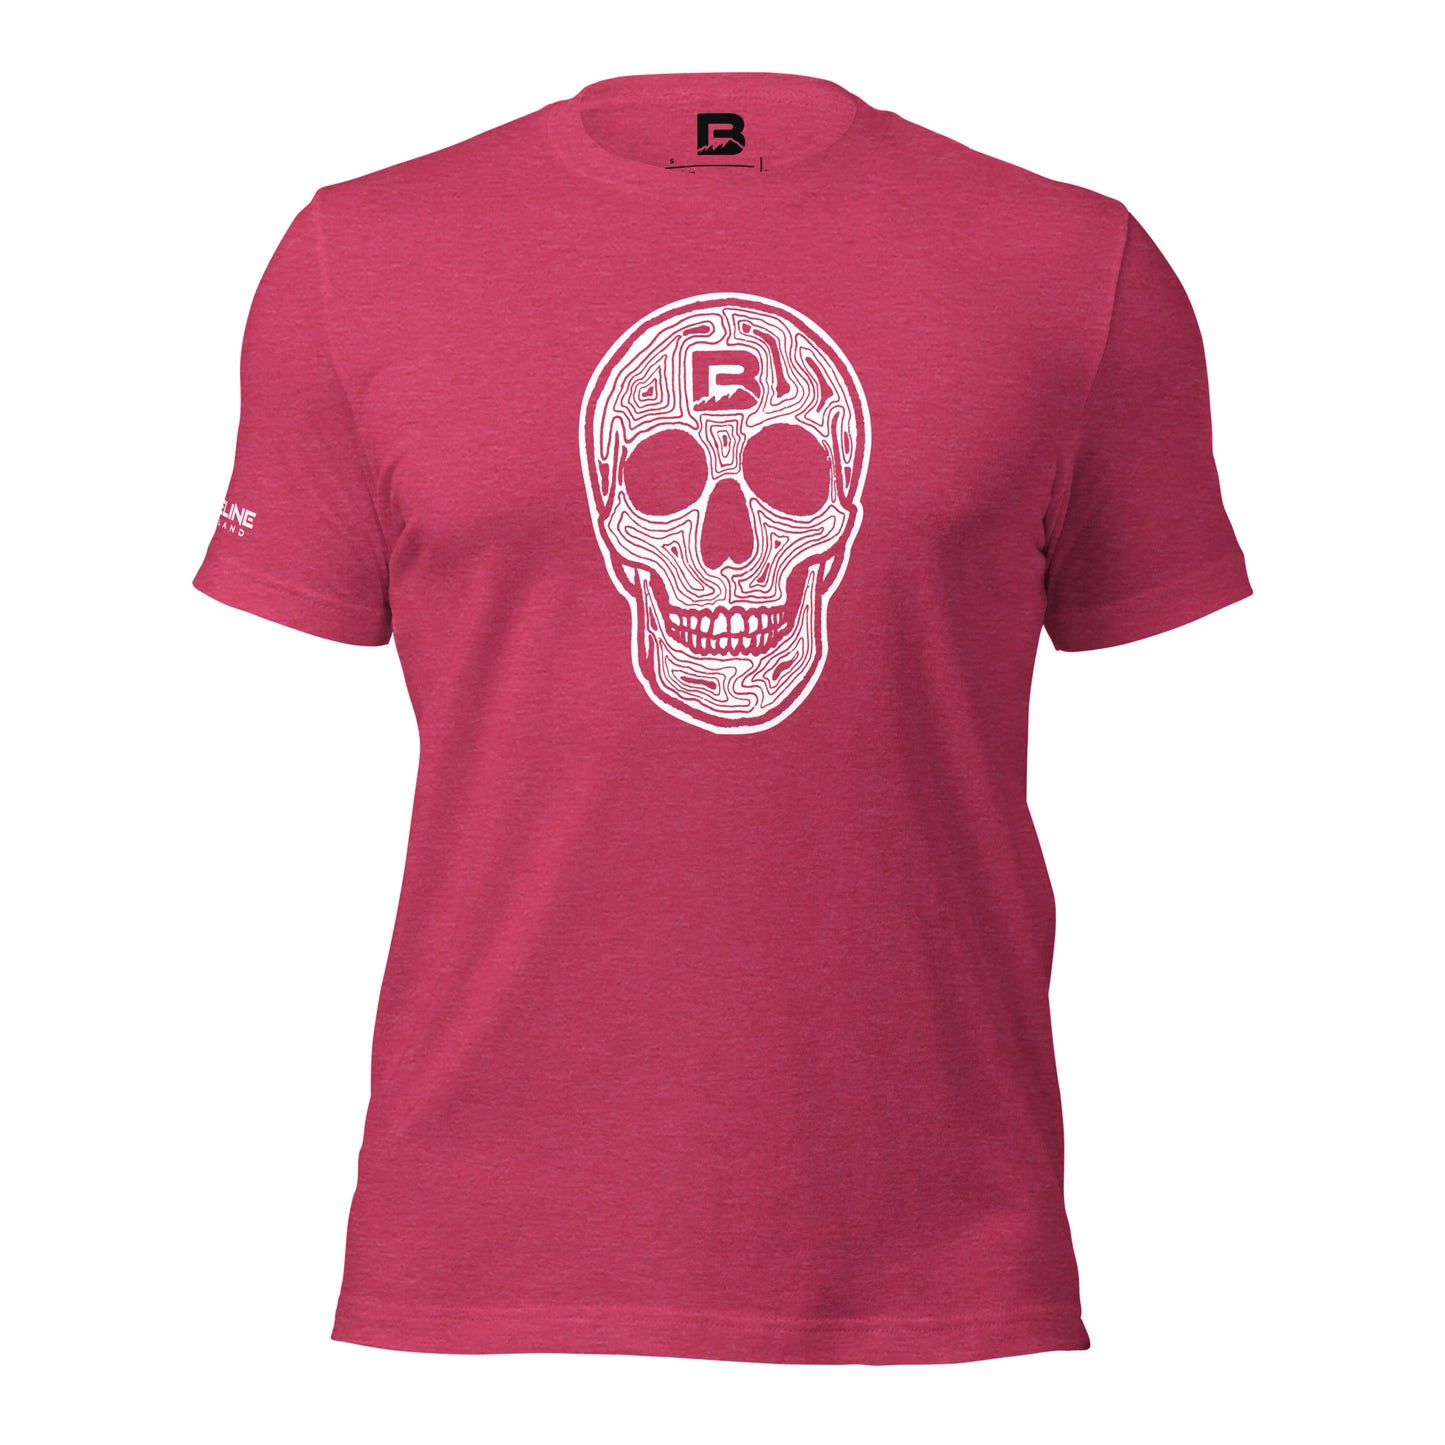 Baseline Overland Topo Skull Unisex t-shirt